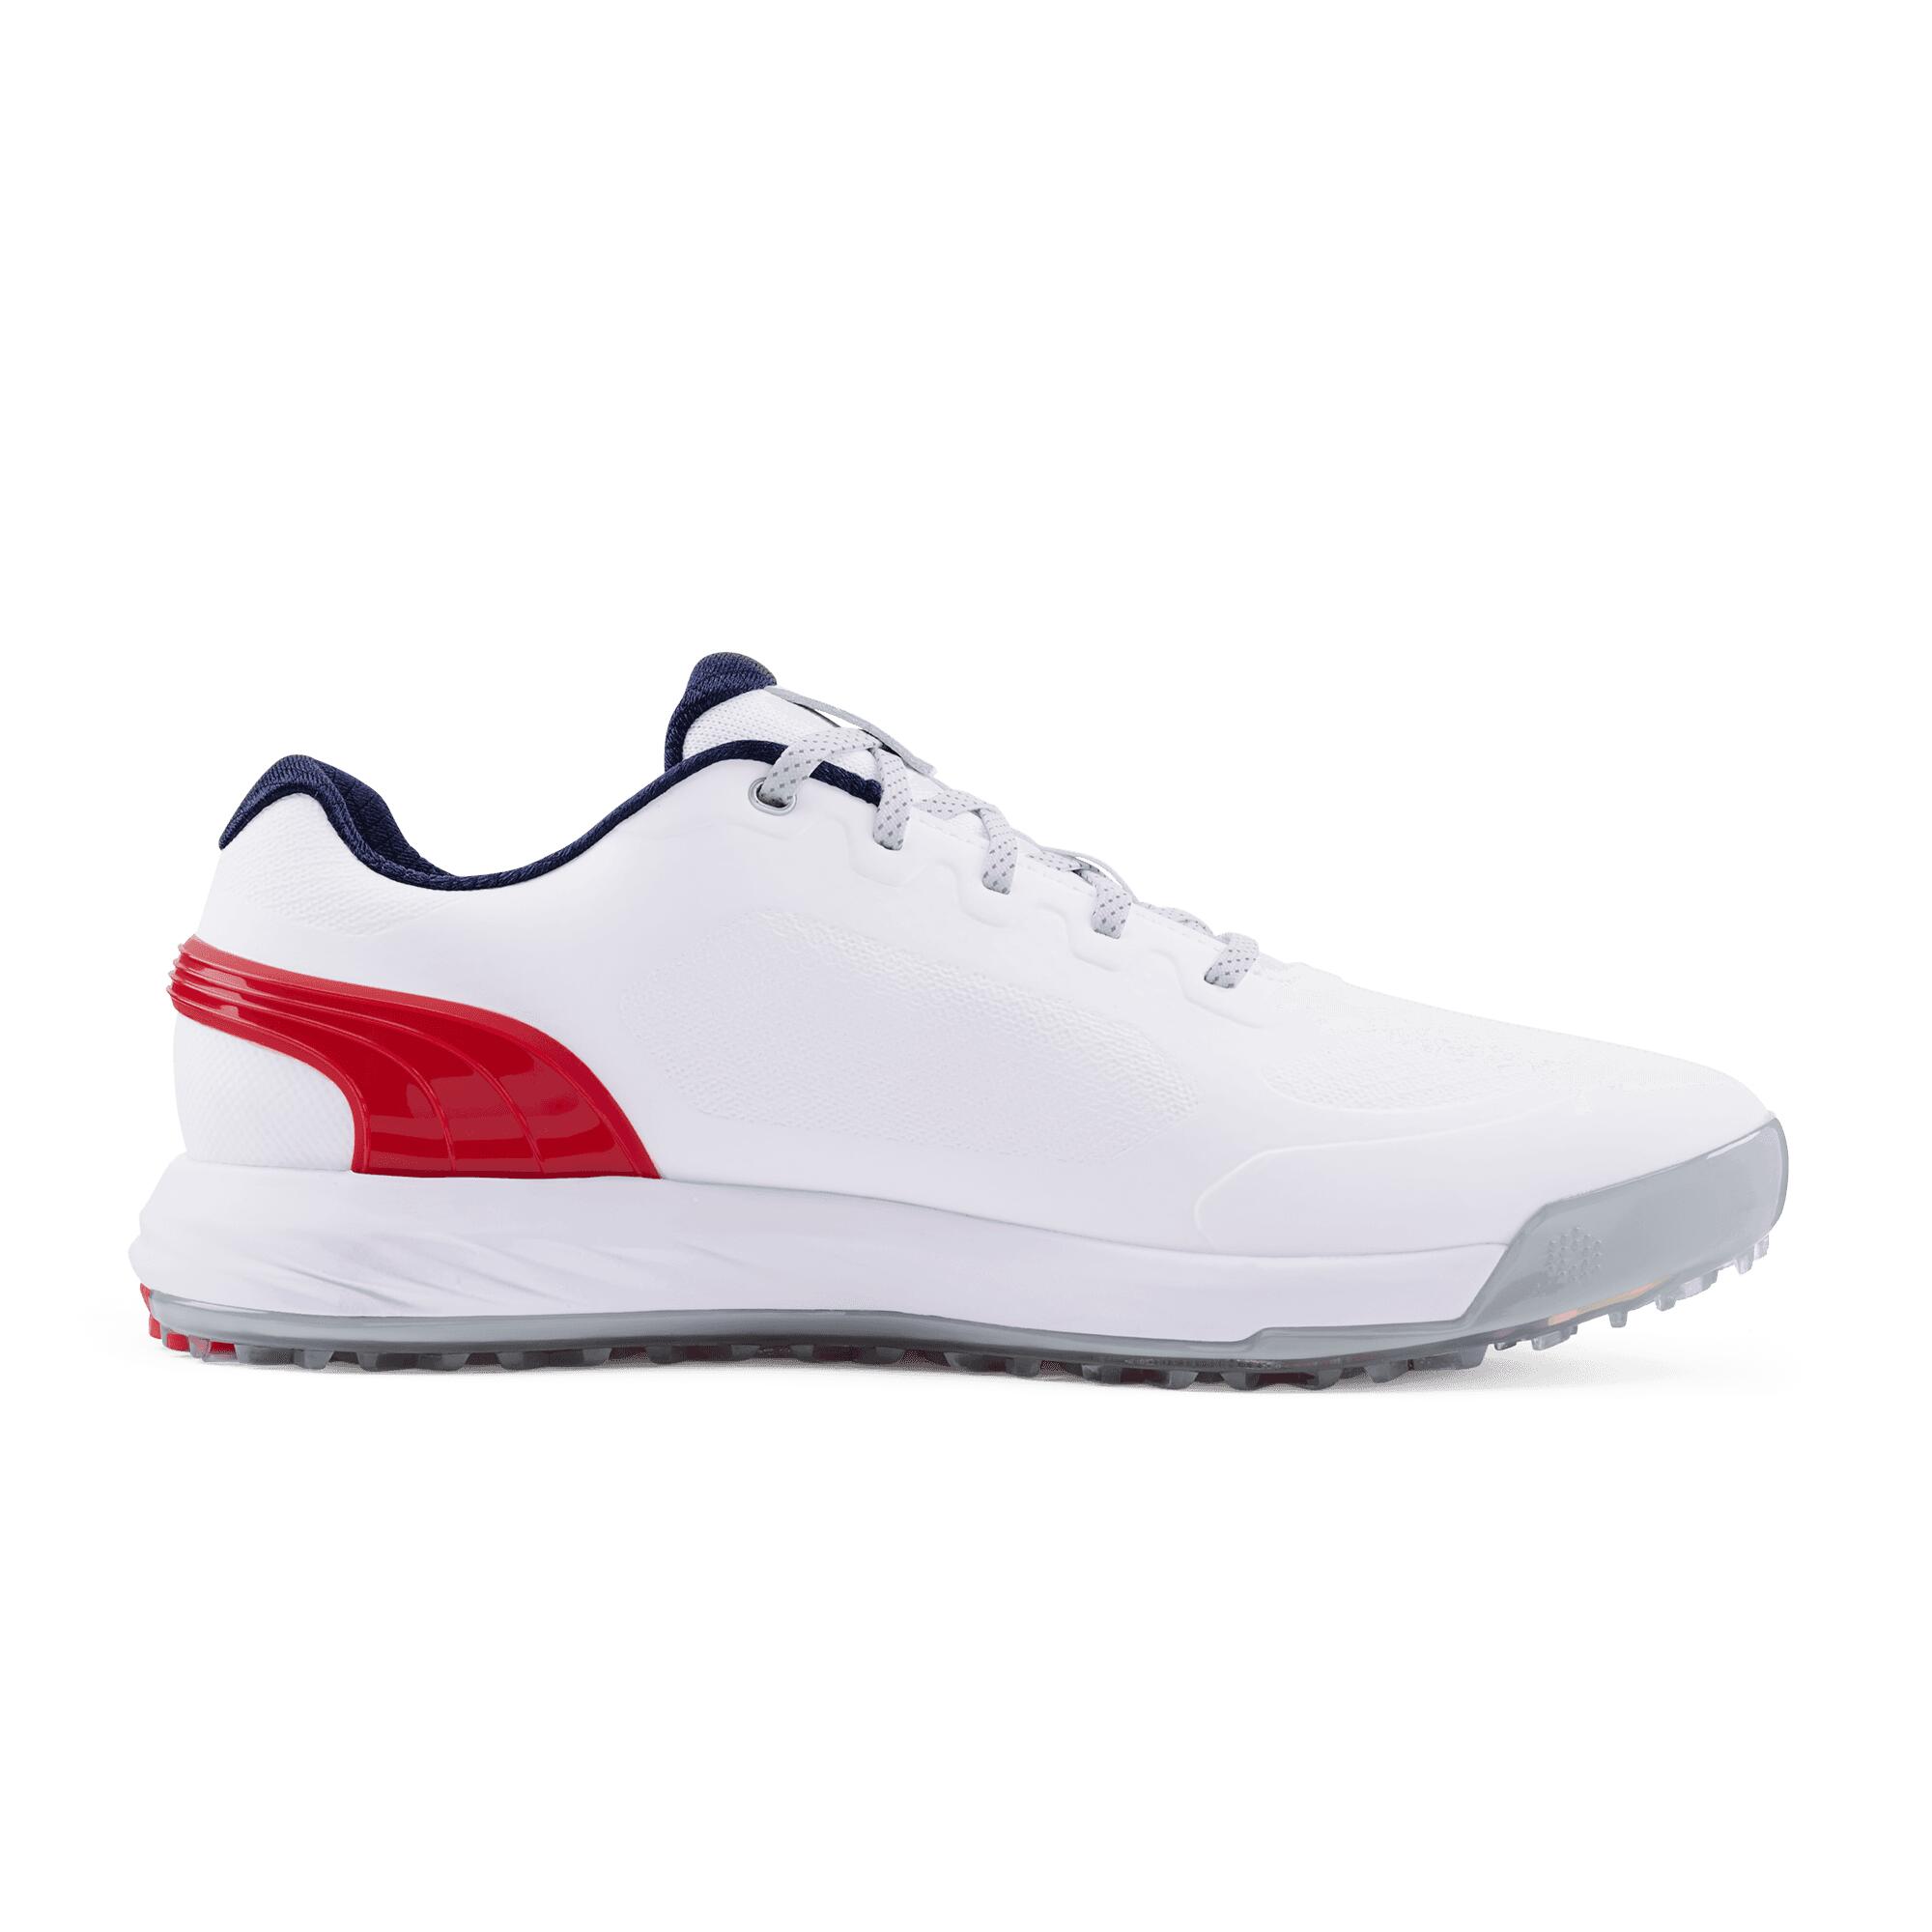 PUMA Puma Alphacat Nitro Golf Shoes White/Red/Navy